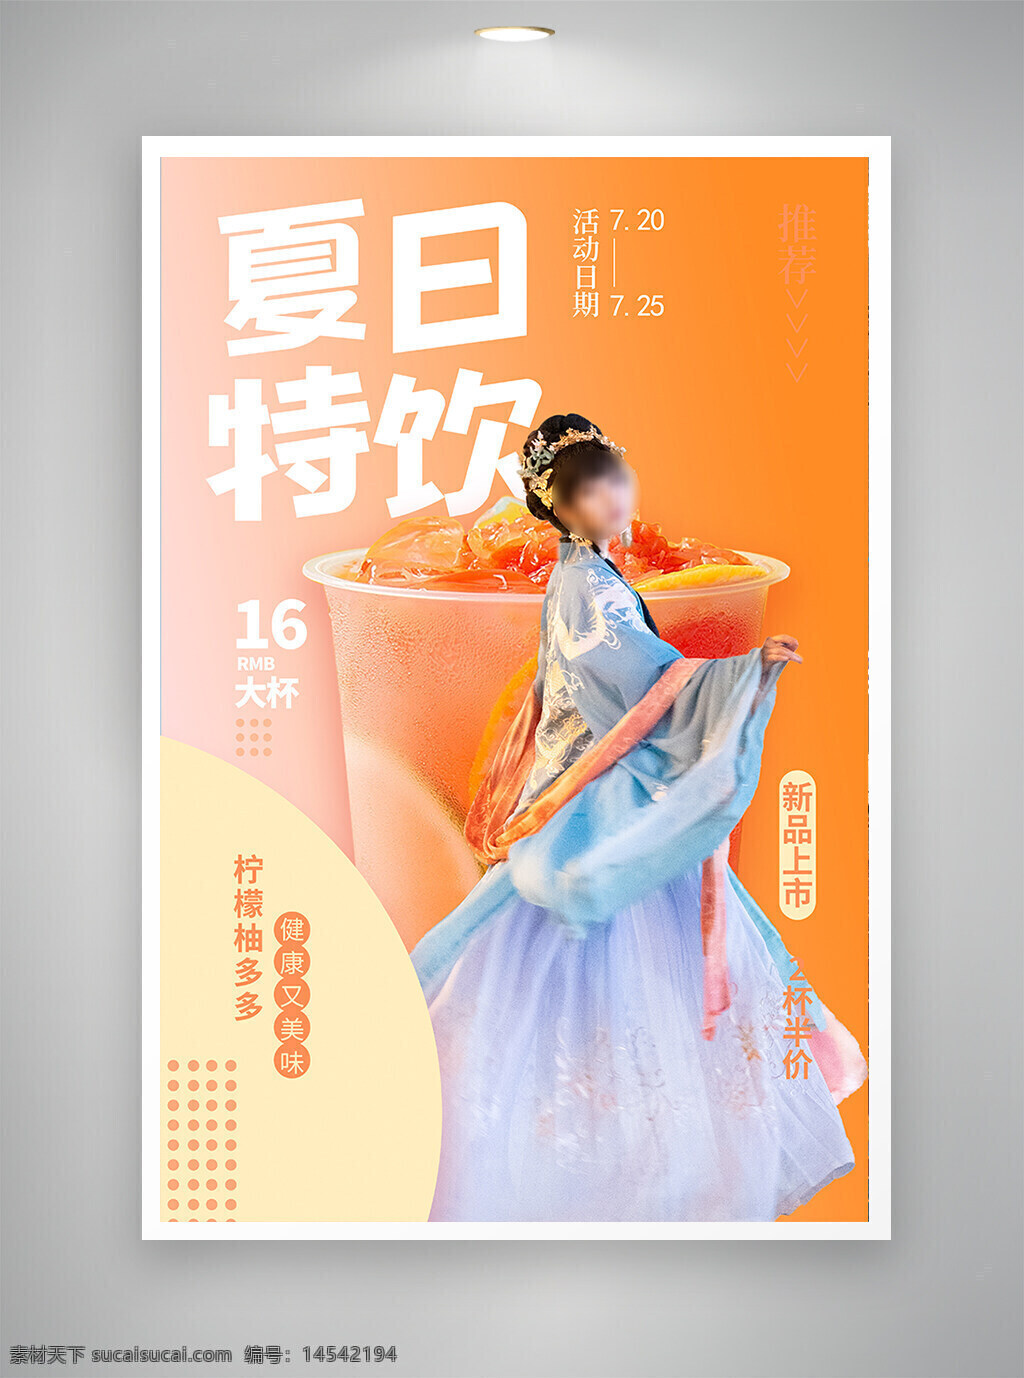 中国风海报 促销海报 节日海报 古风海报 夏日促销